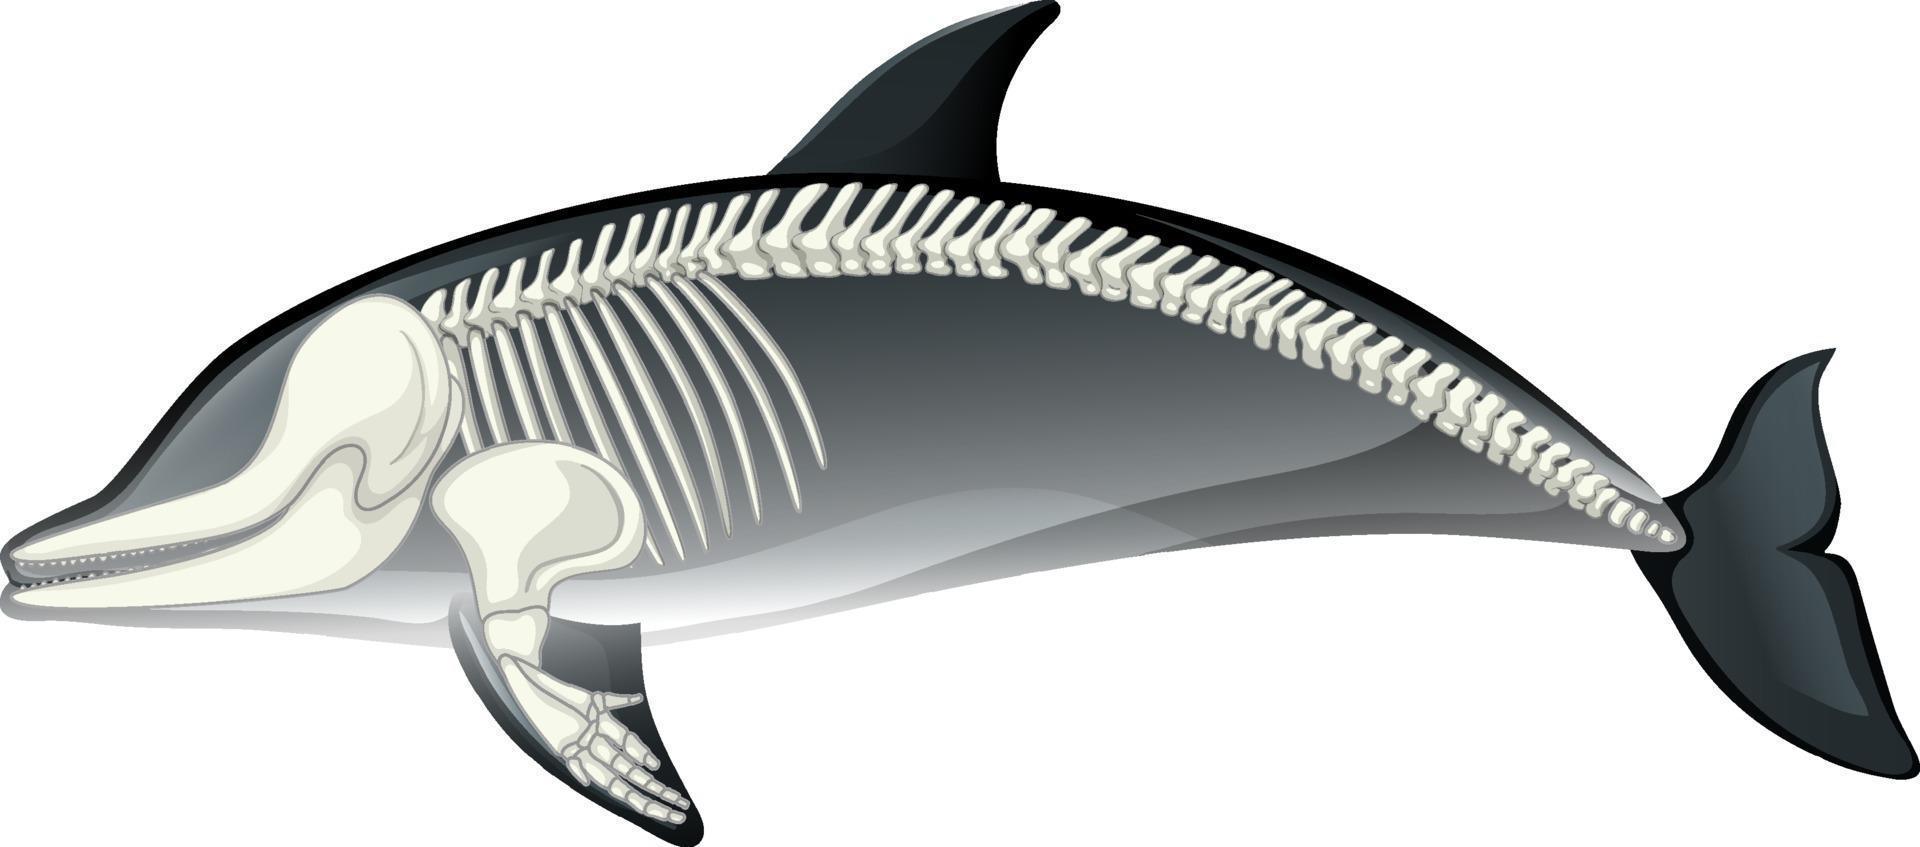 Anatomía del esqueleto del delfín aislado sobre fondo blanco. vector